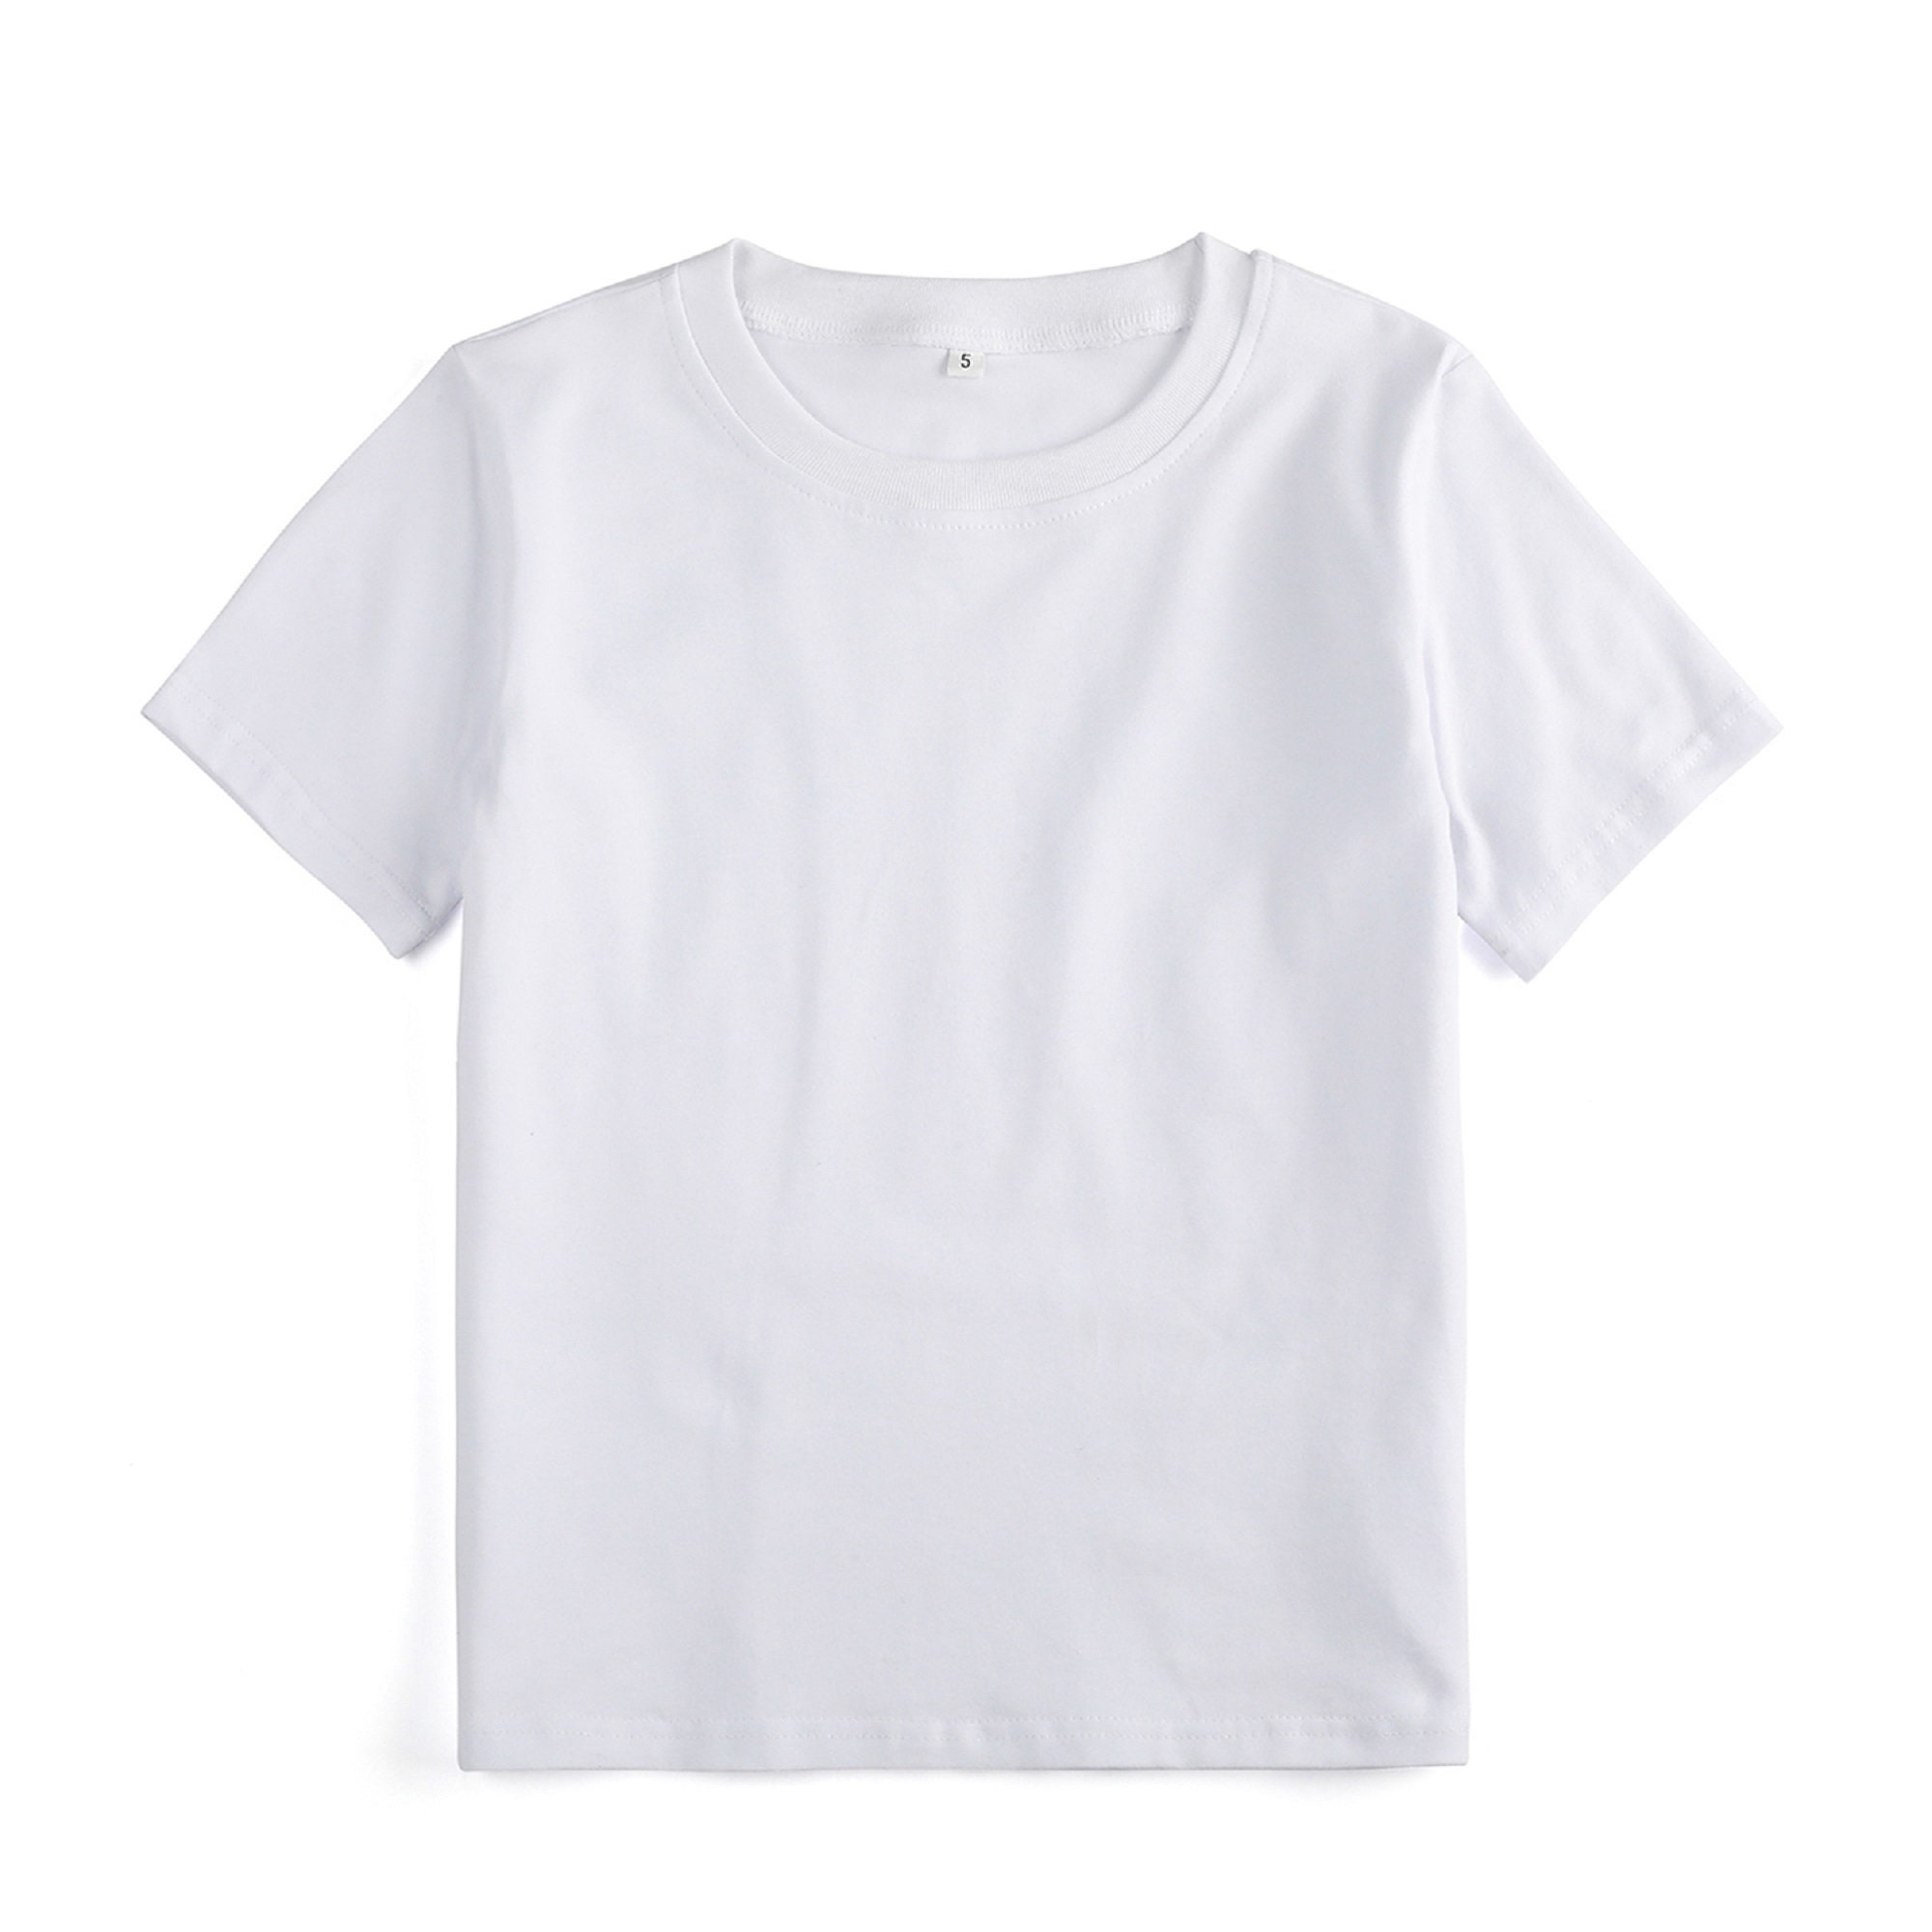 POLYESTER 100% DTG Blanks White Short Sleeve Shirt Unisex Quality ...